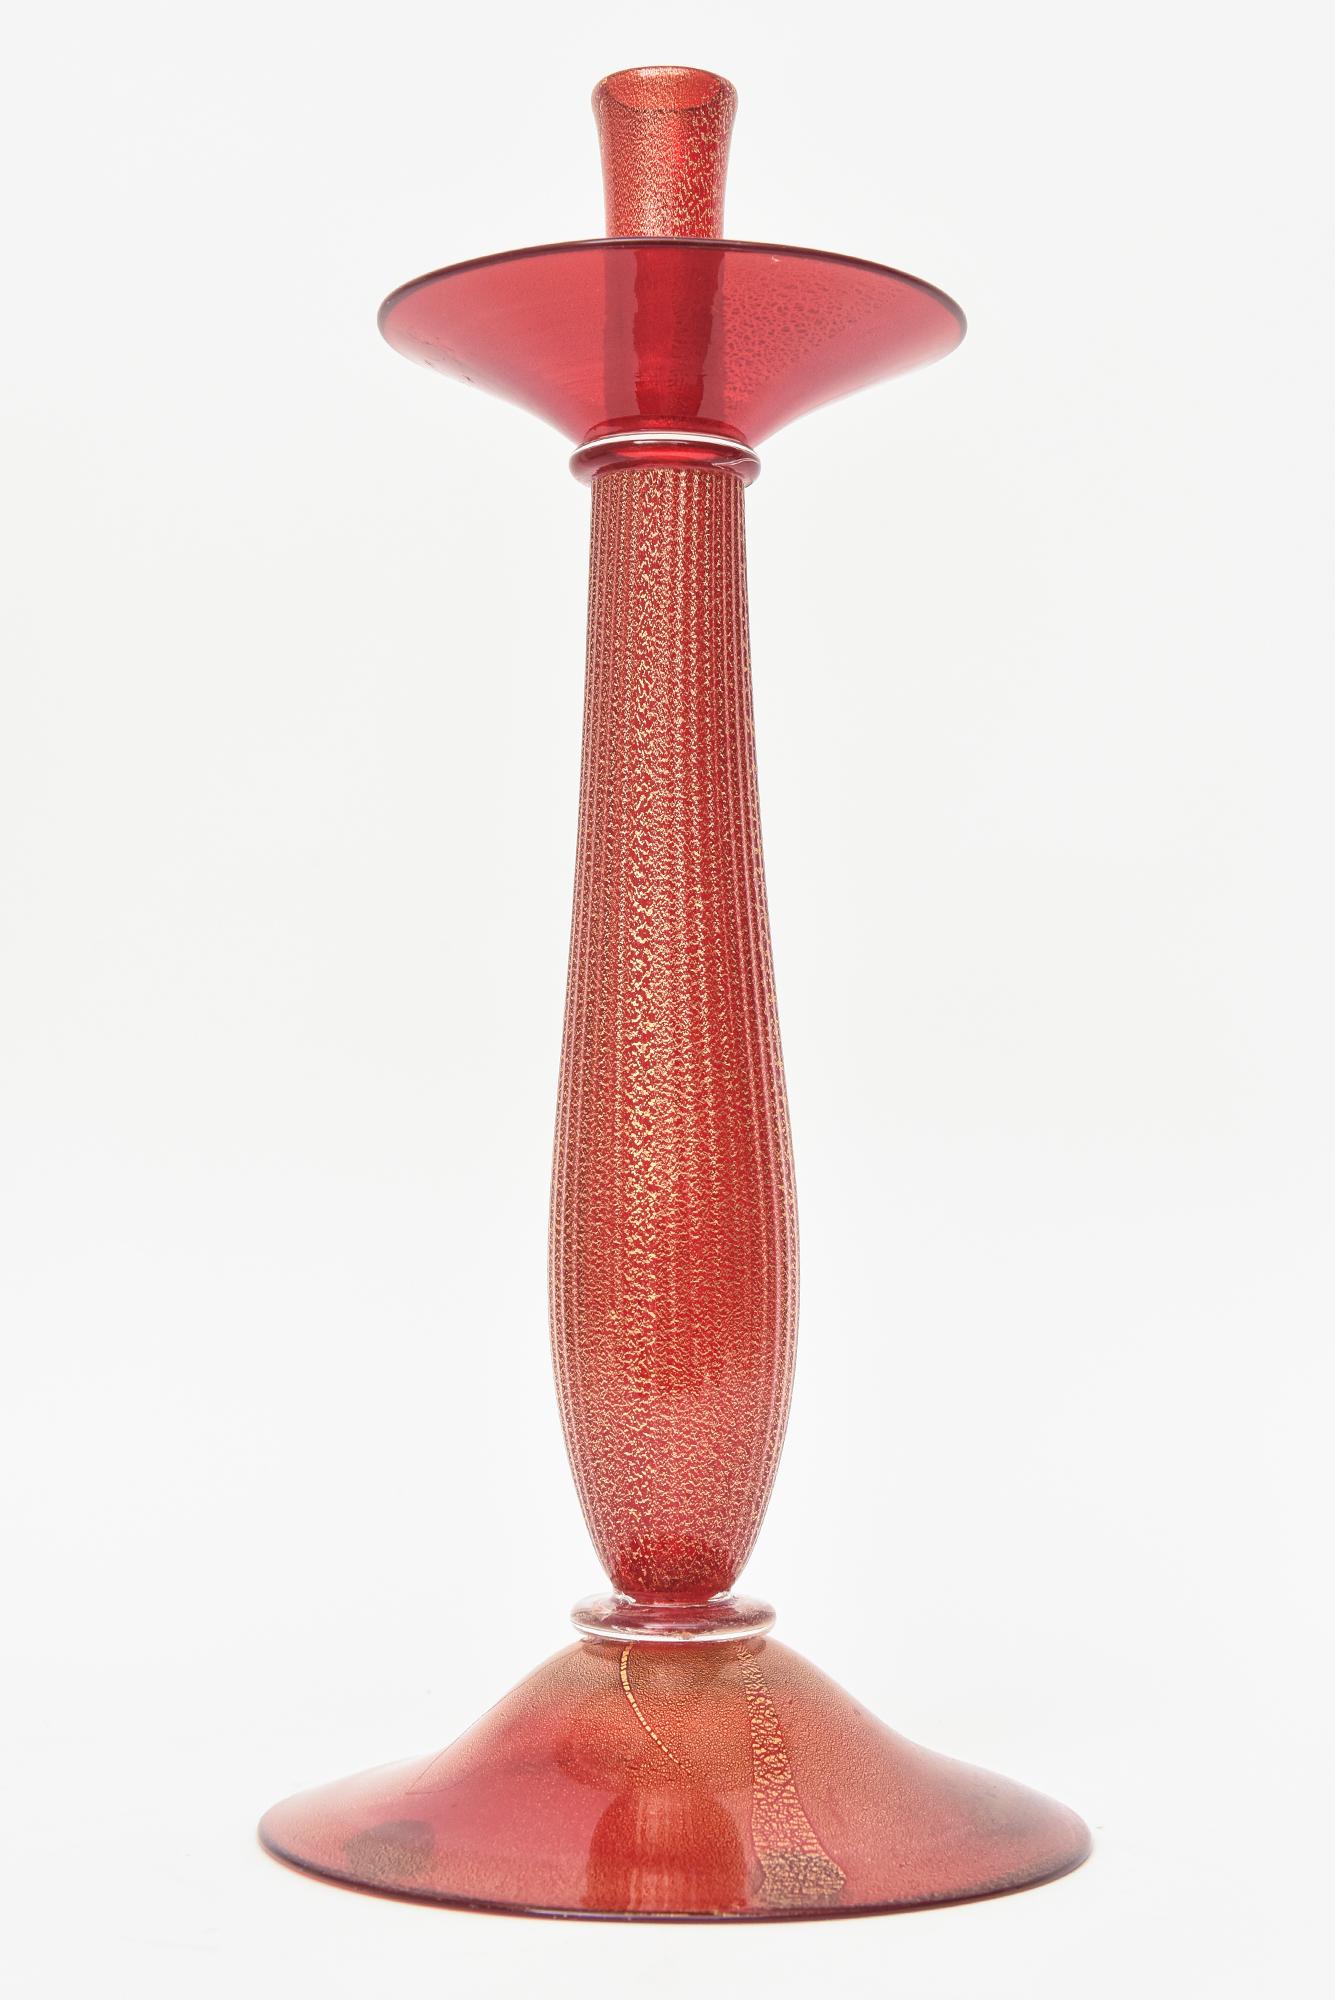 Ce bougeoir vintage en verre soufflé de Murano, datant du milieu du siècle dernier, est l'œuvre des maîtres Barovier&Toso des années 50. Il est monumental et mesure 17,5 pouces de haut.
La couleur rouge est infusée d'un abondant entourage